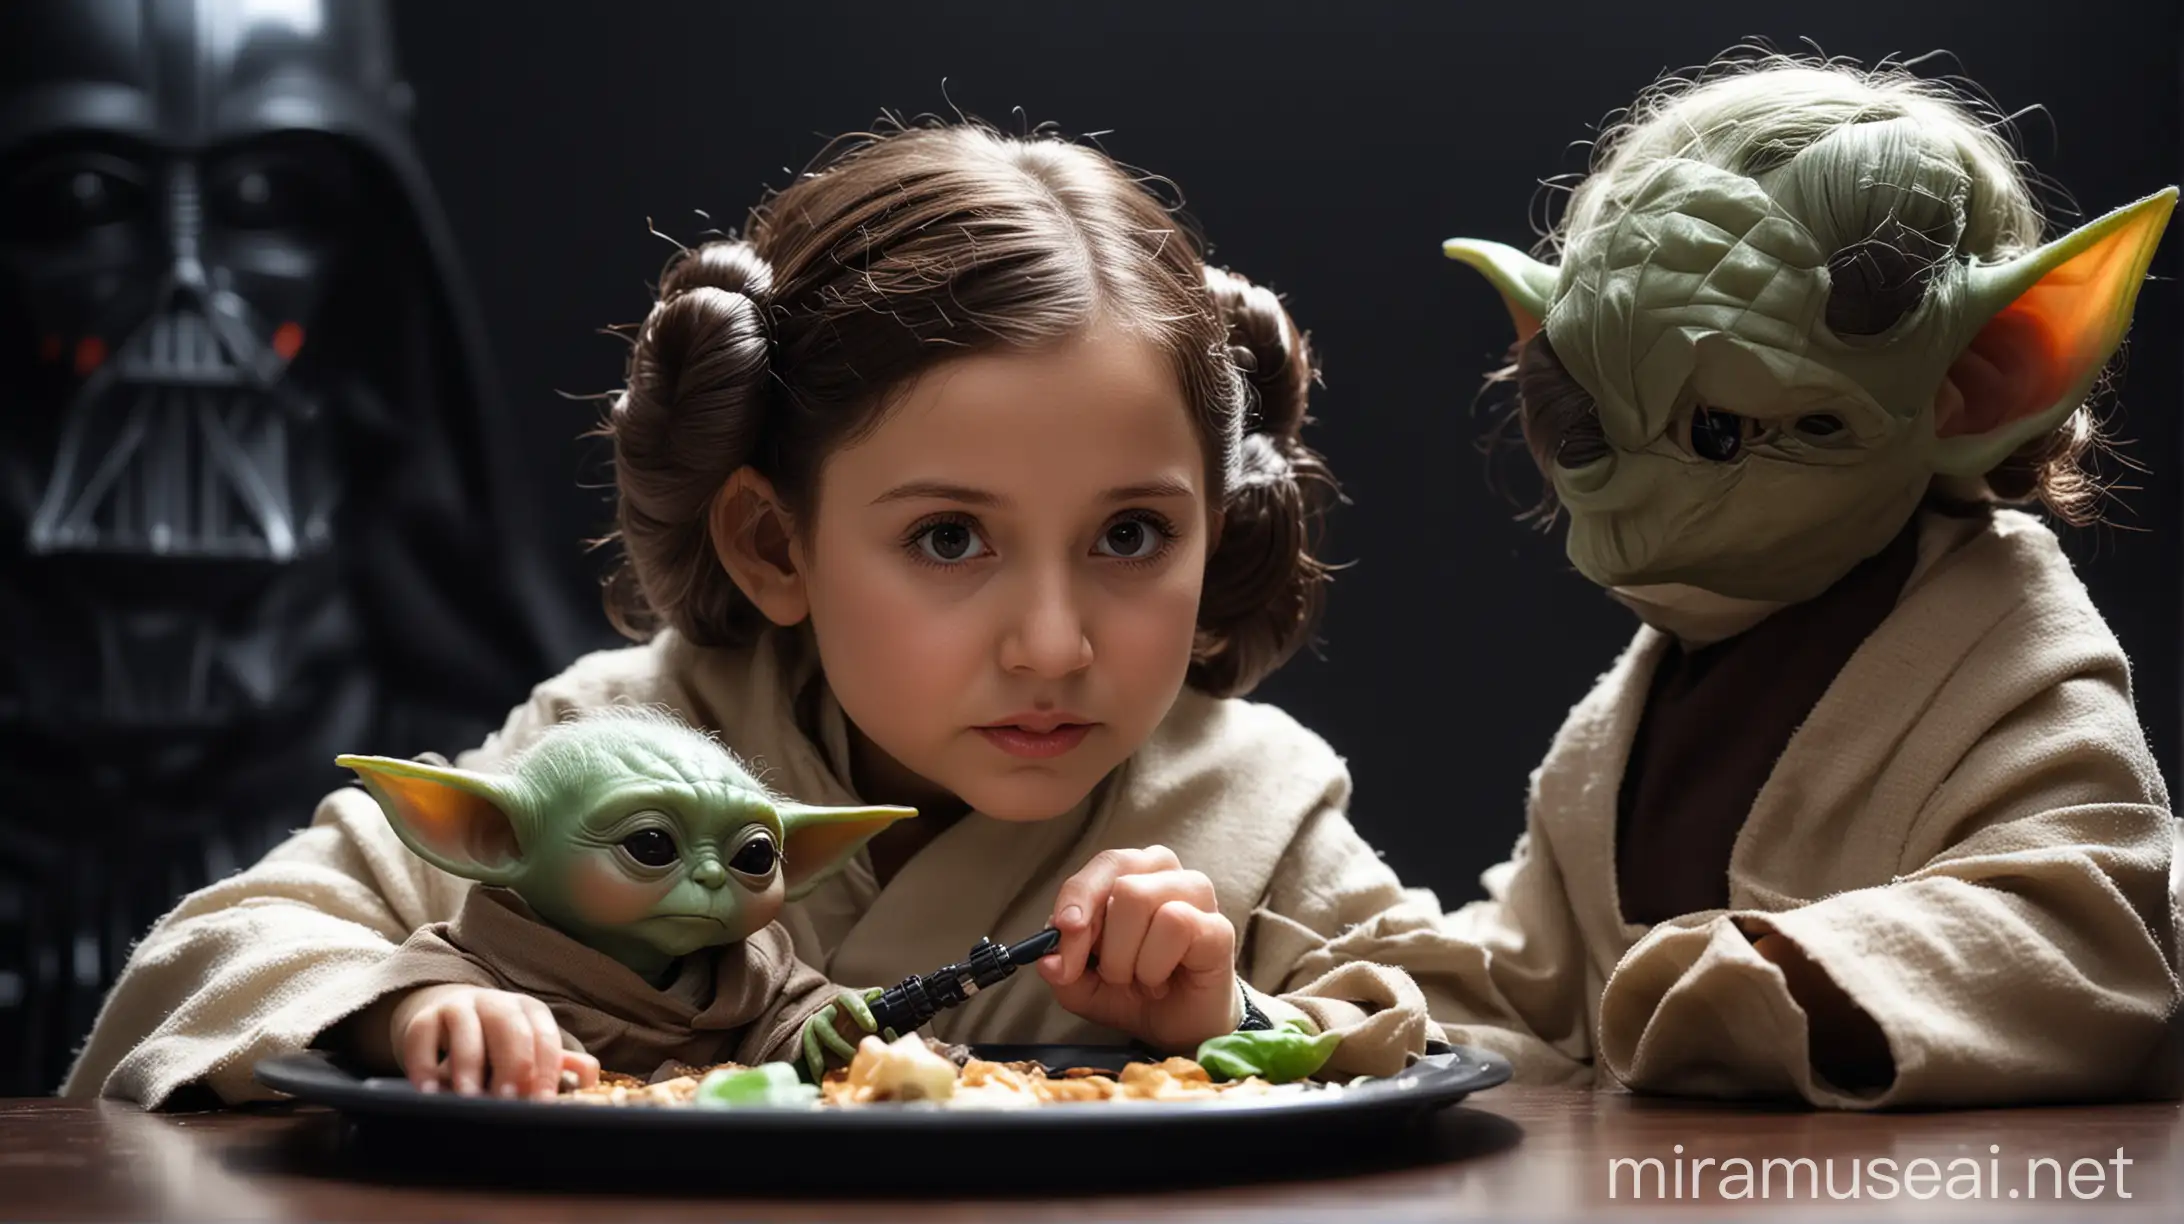 Young Princess Leia and Baby Yoda Eating Darth Vader